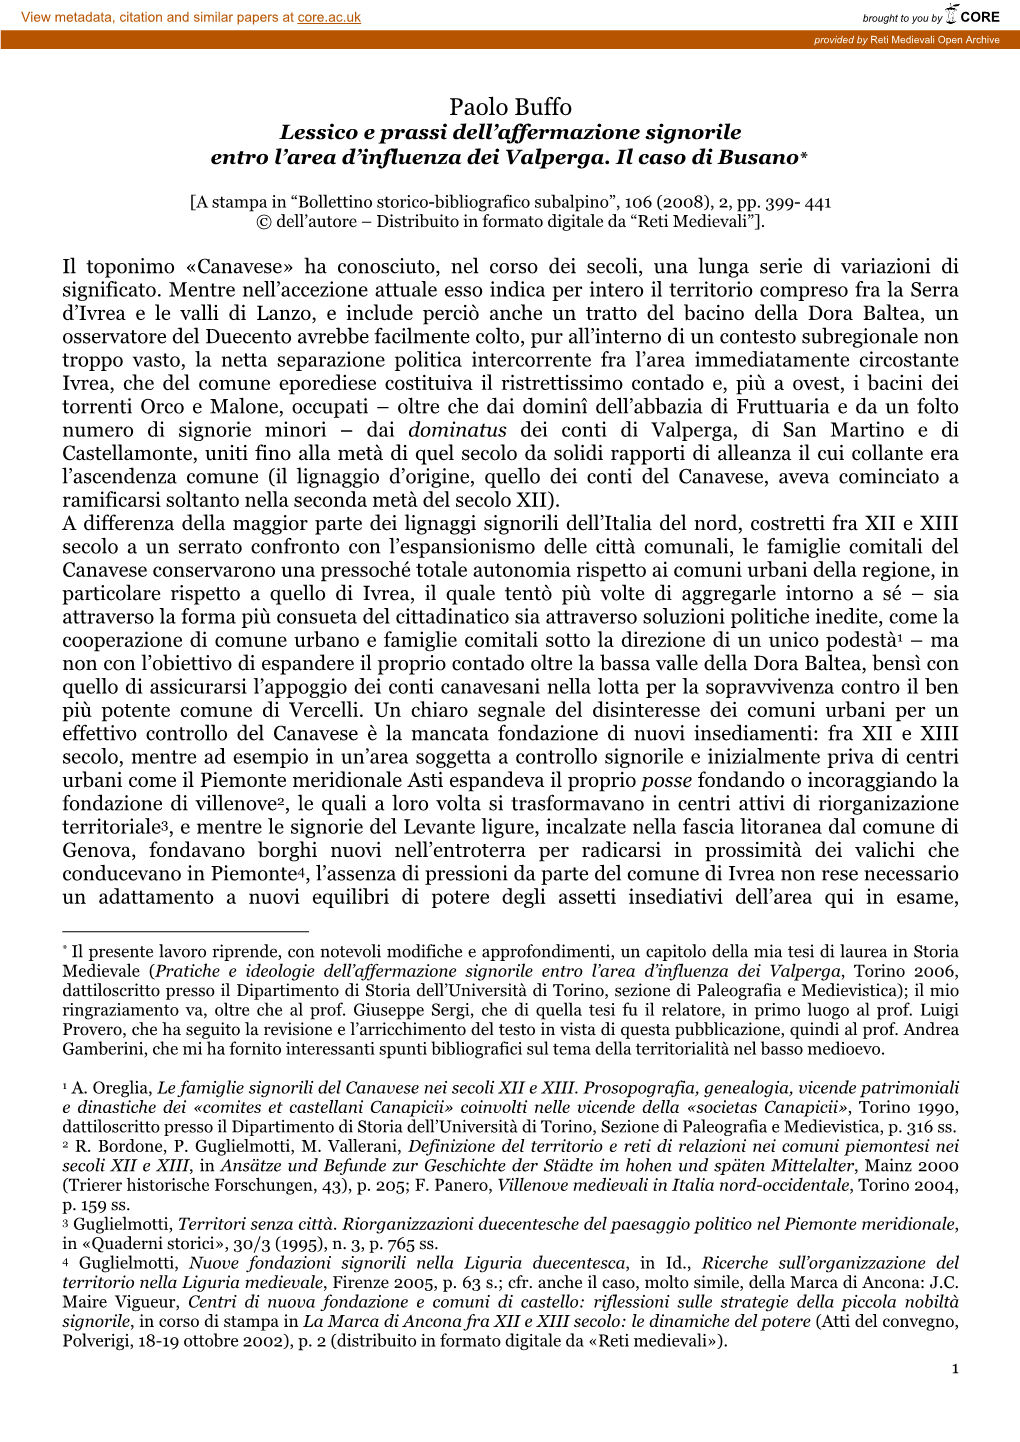 Paolo Buffo Lessico E Prassi Dell’Affermazione Signorile Entro L’Area D’Influenza Dei Valperga